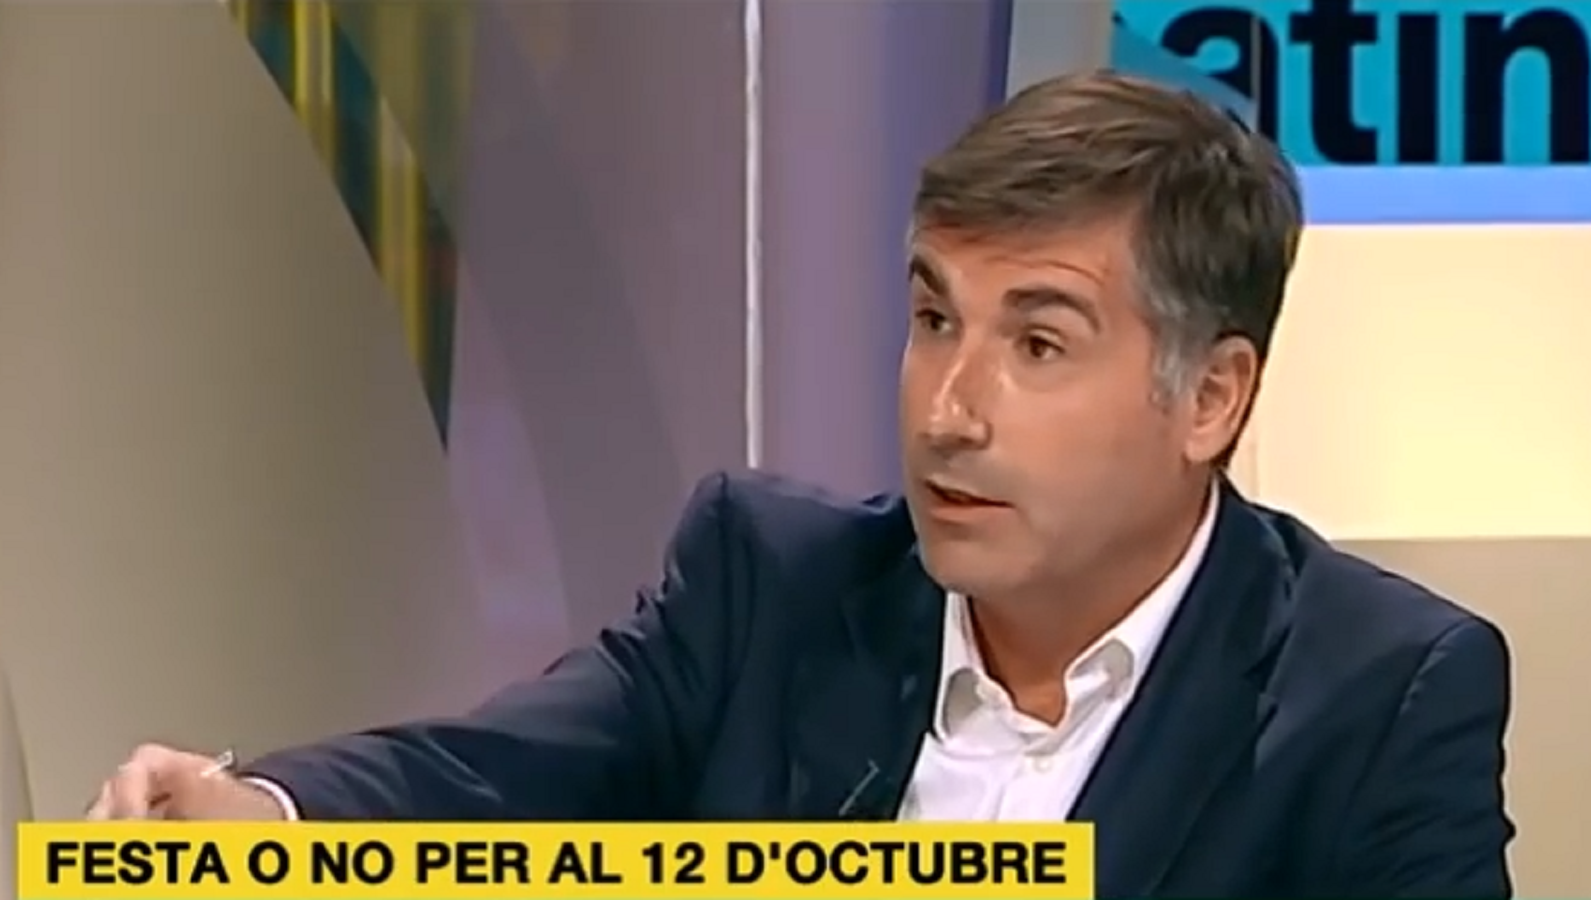 López Alegre i Martín Blanco anuncien que deixen TV3 i Catalunya Ràdio